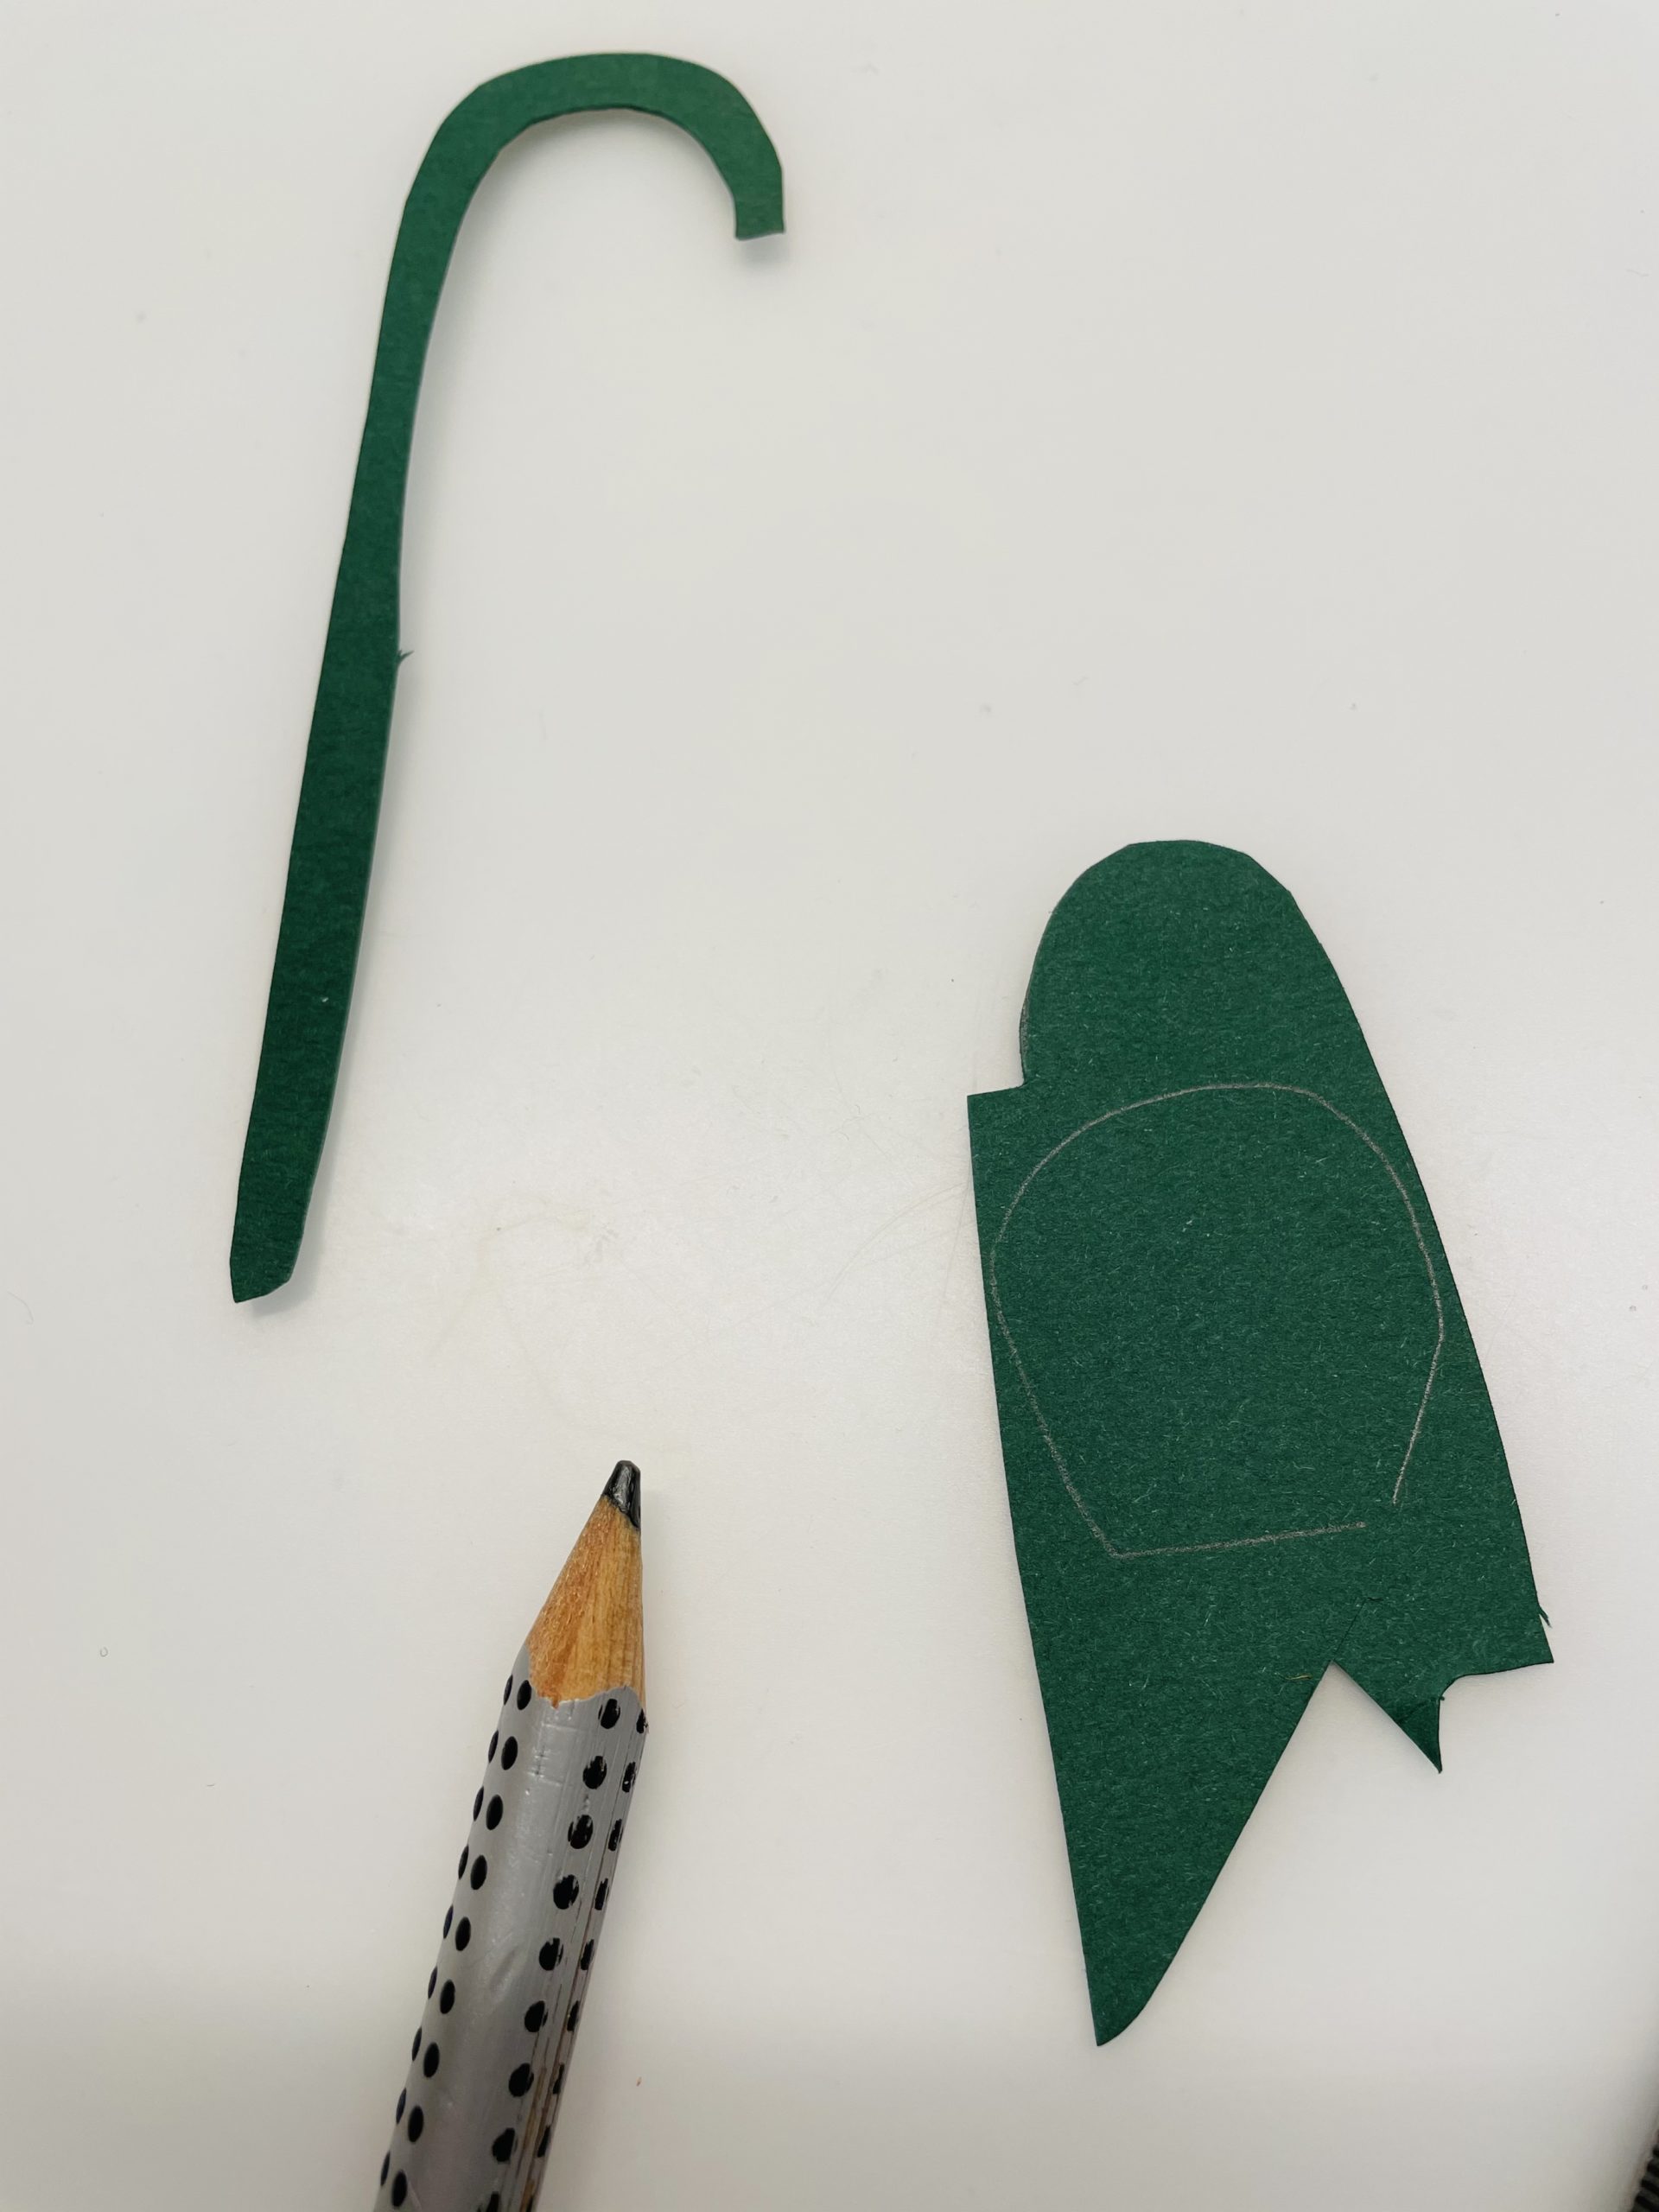 Bild zum Schritt 15 für das Bastel- und DIY-Abenteuer für Kinder: 'Jetzt malt ihr die Knospe auf das grüne Papier und...'